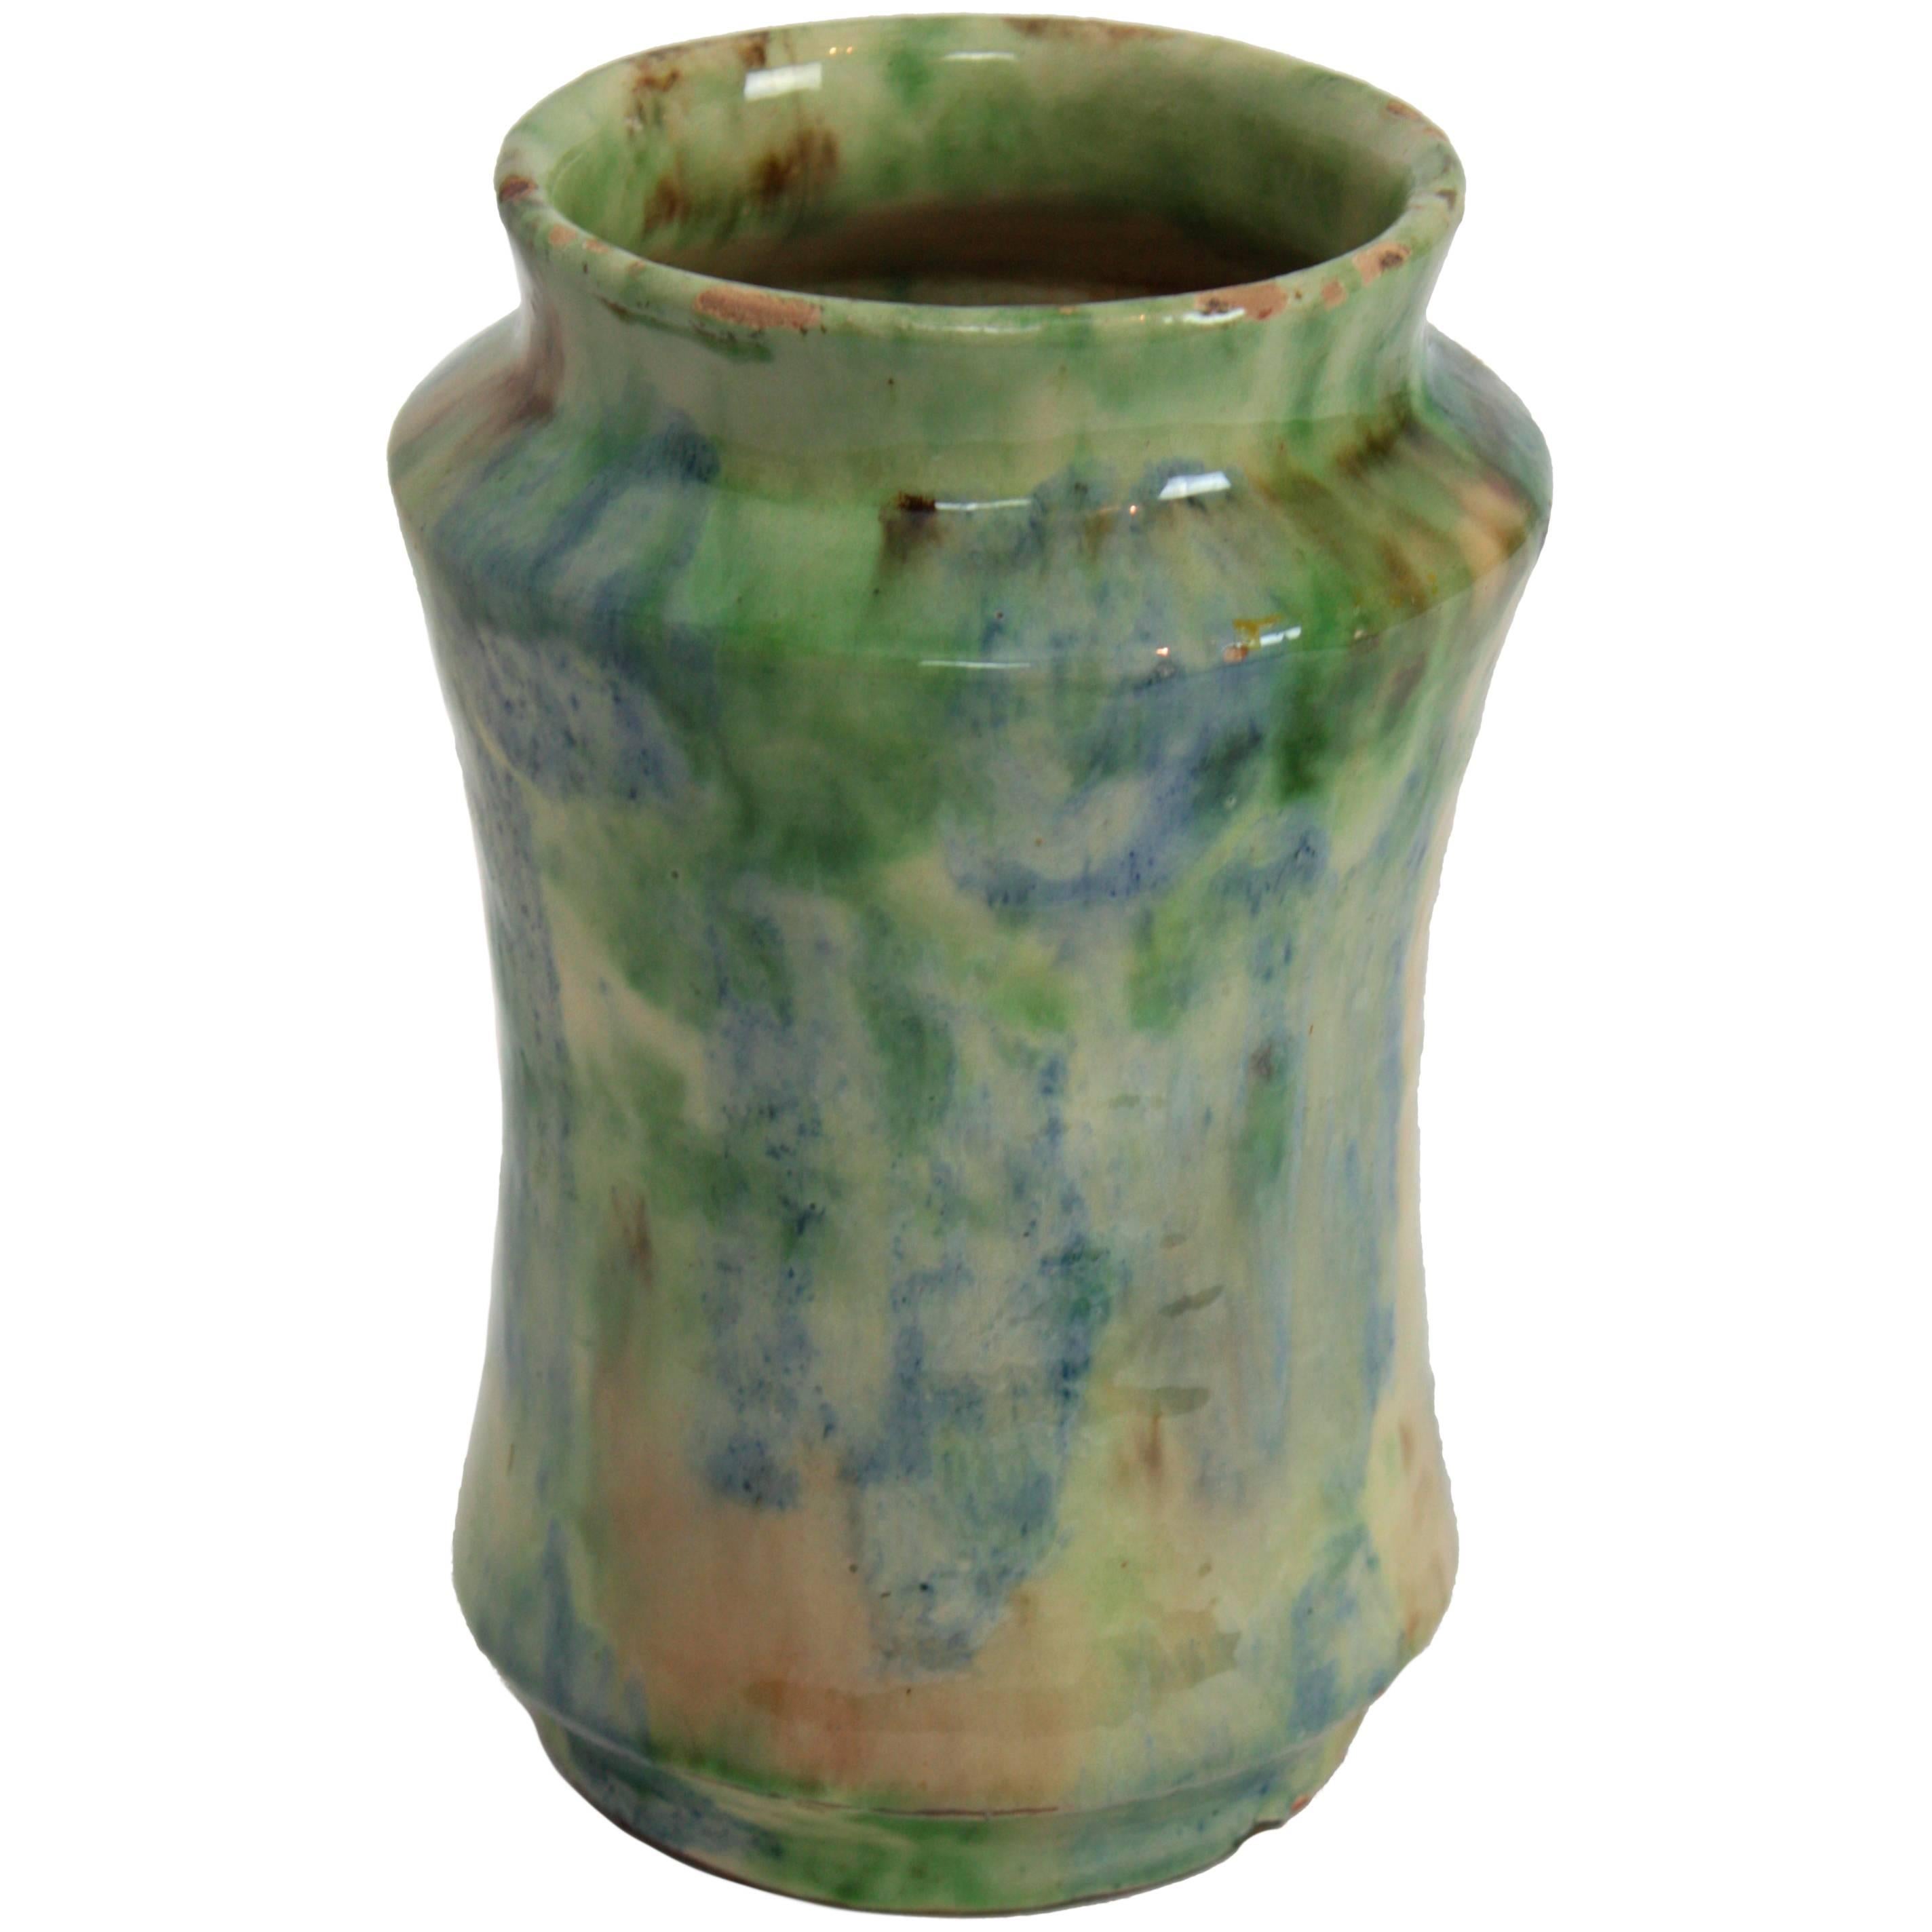 Vase en terre cuite émaillée dans les tons vert, bleu et beige 
Vase traditionnel espagnol en céramique émaillée 